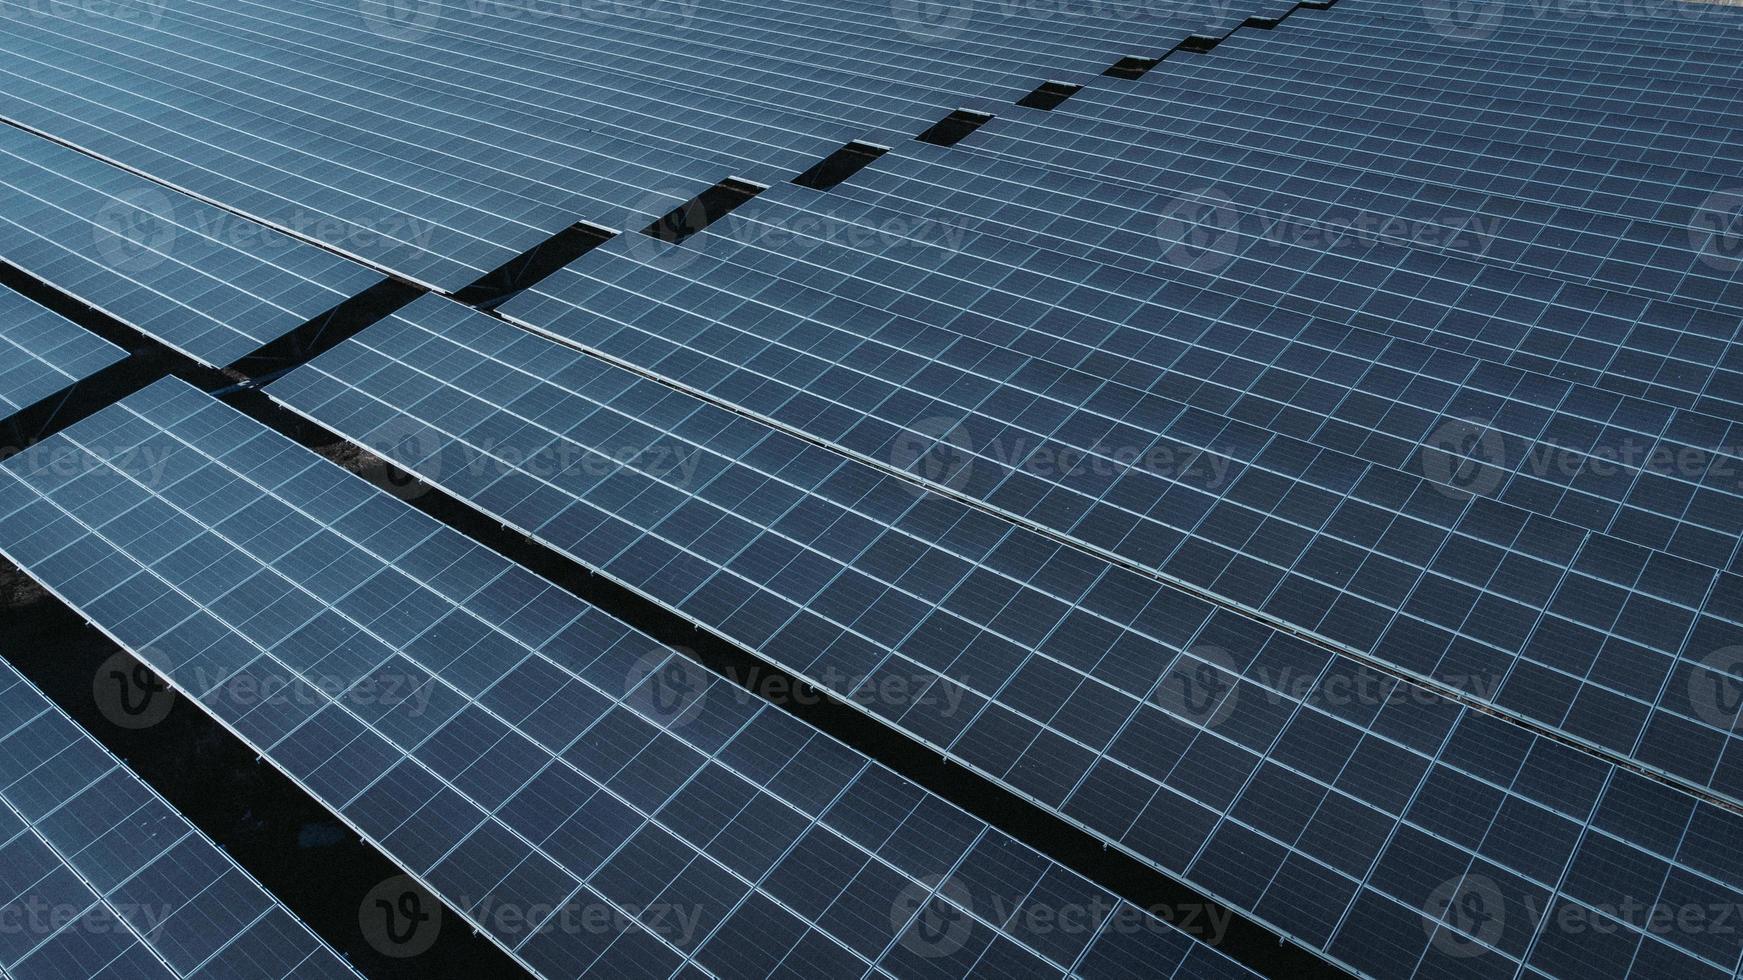 Solarzelle im Solarpark. Konzept der nachhaltigen grünen Energie durch Erzeugung von Energie aus Sonnenlicht. foto